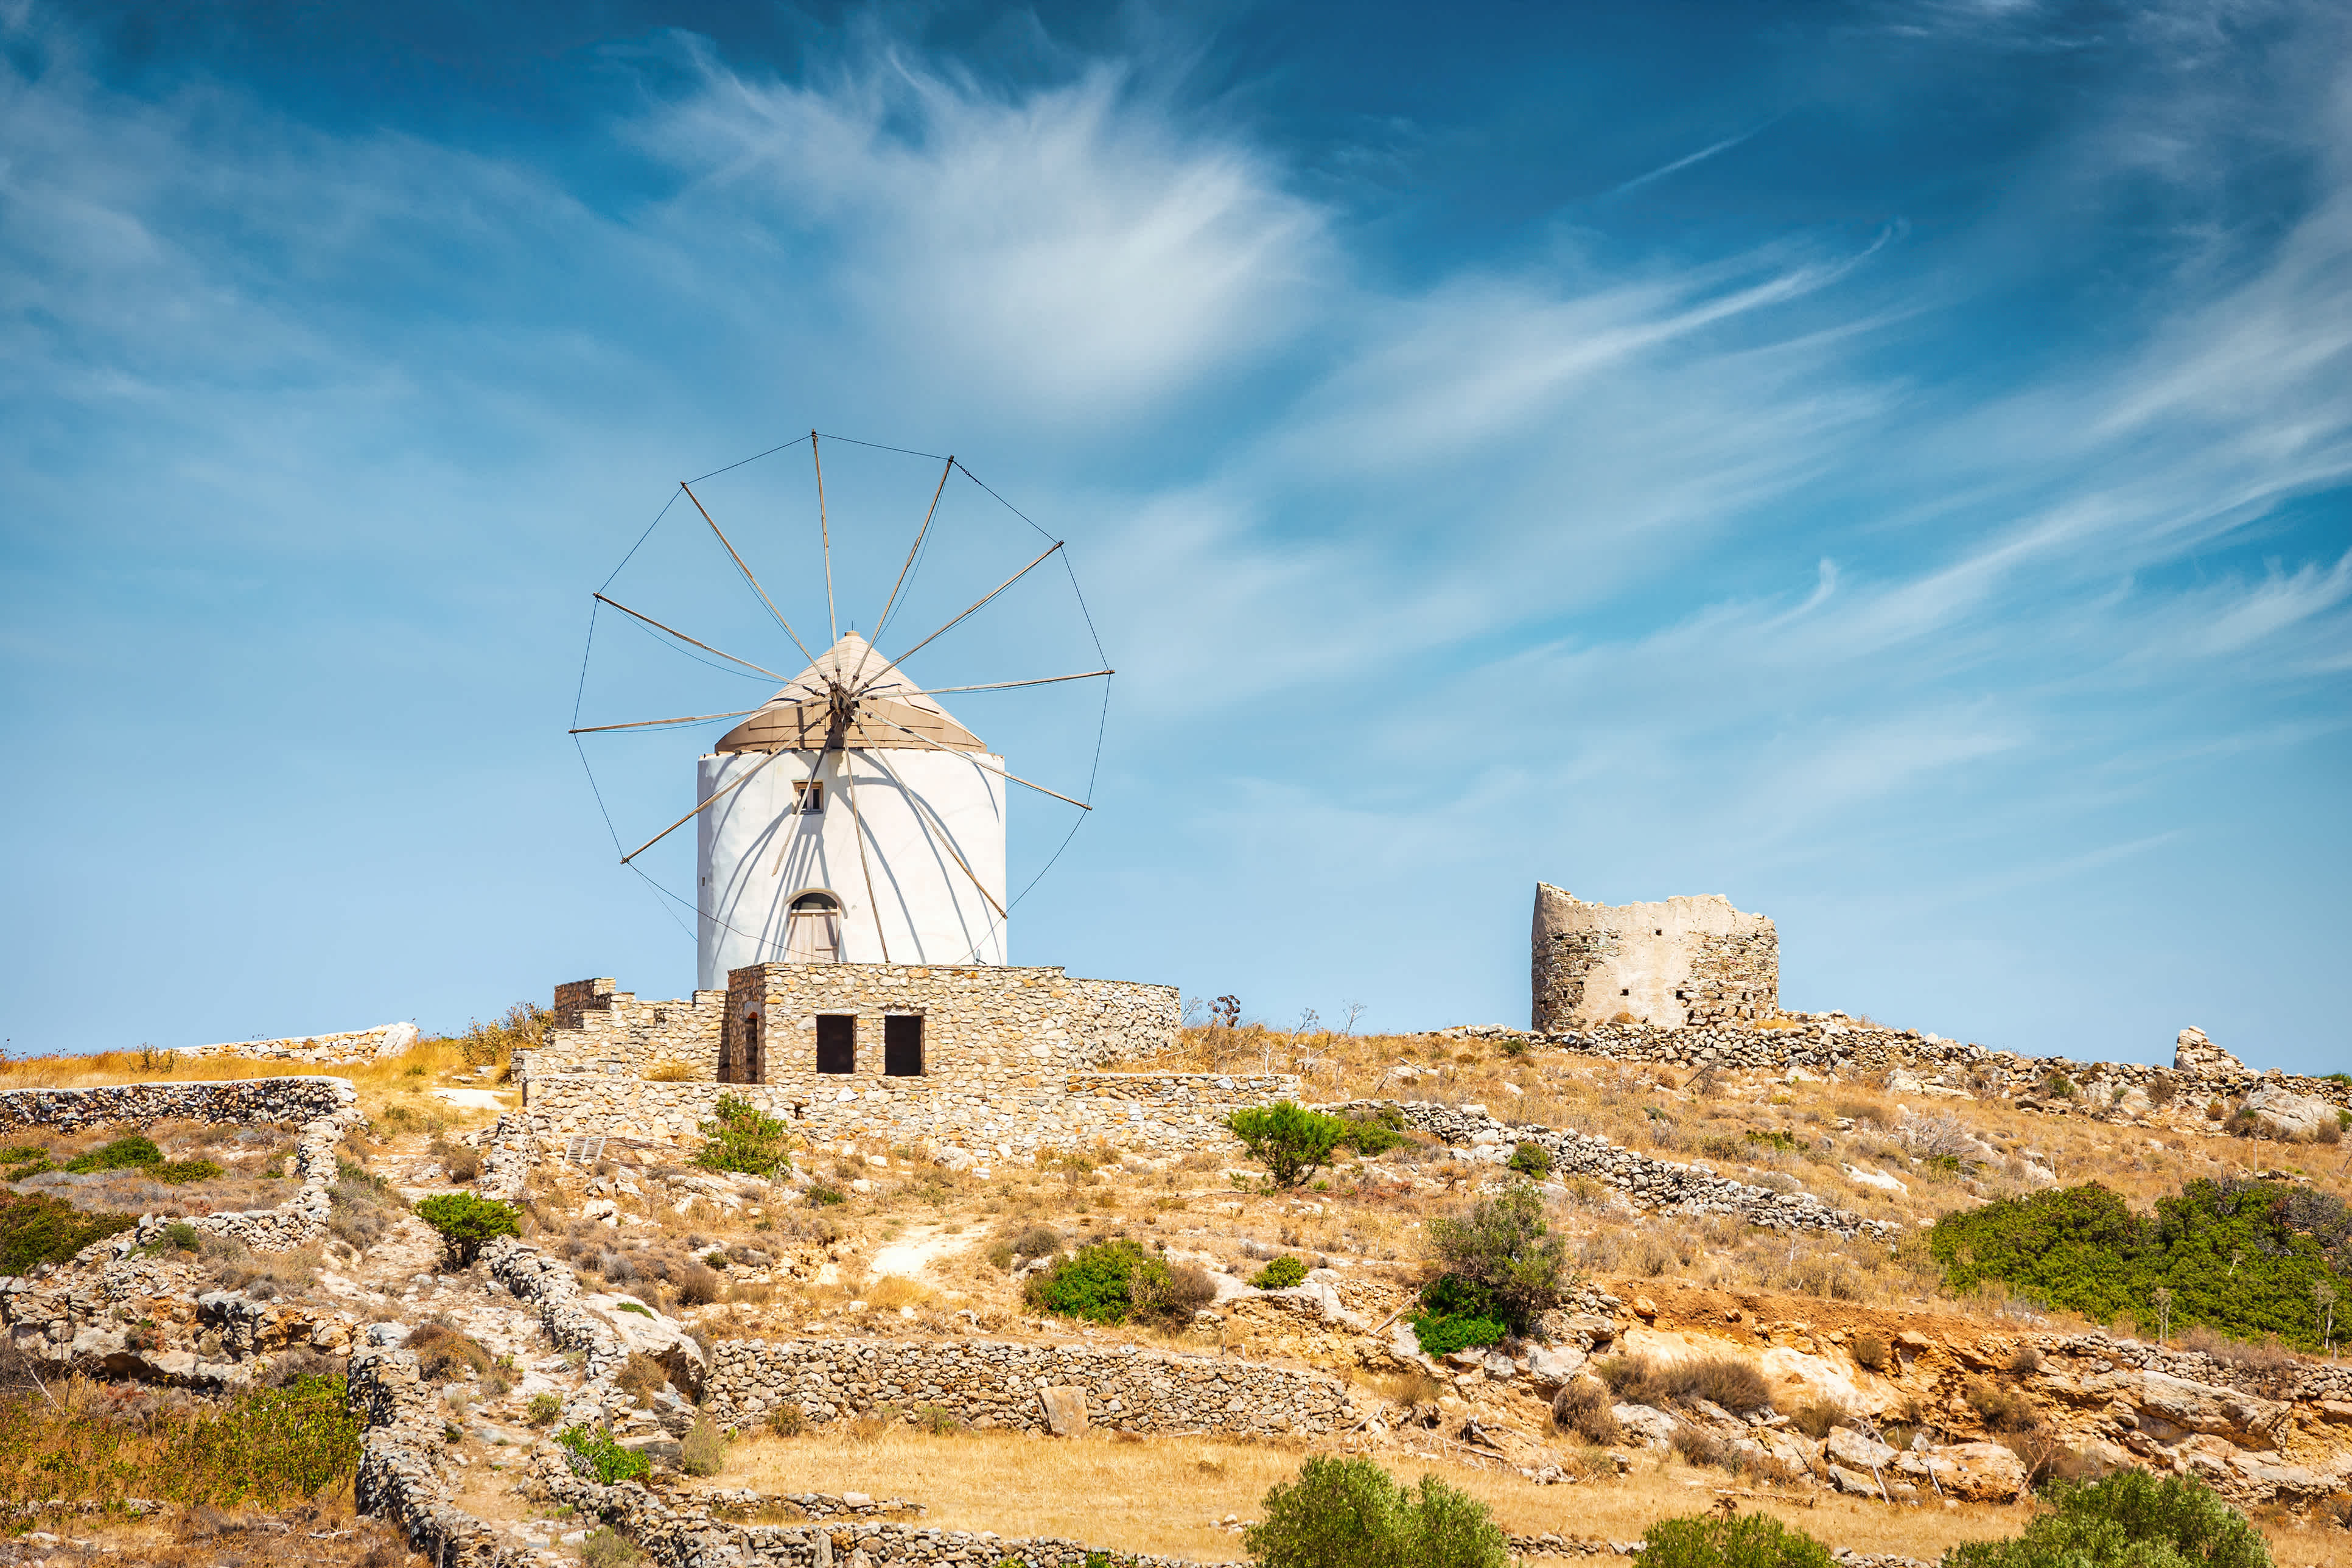 Des villages pittoresques avec des moulins à vent - à découvrir lors d'un séjour à Paros.